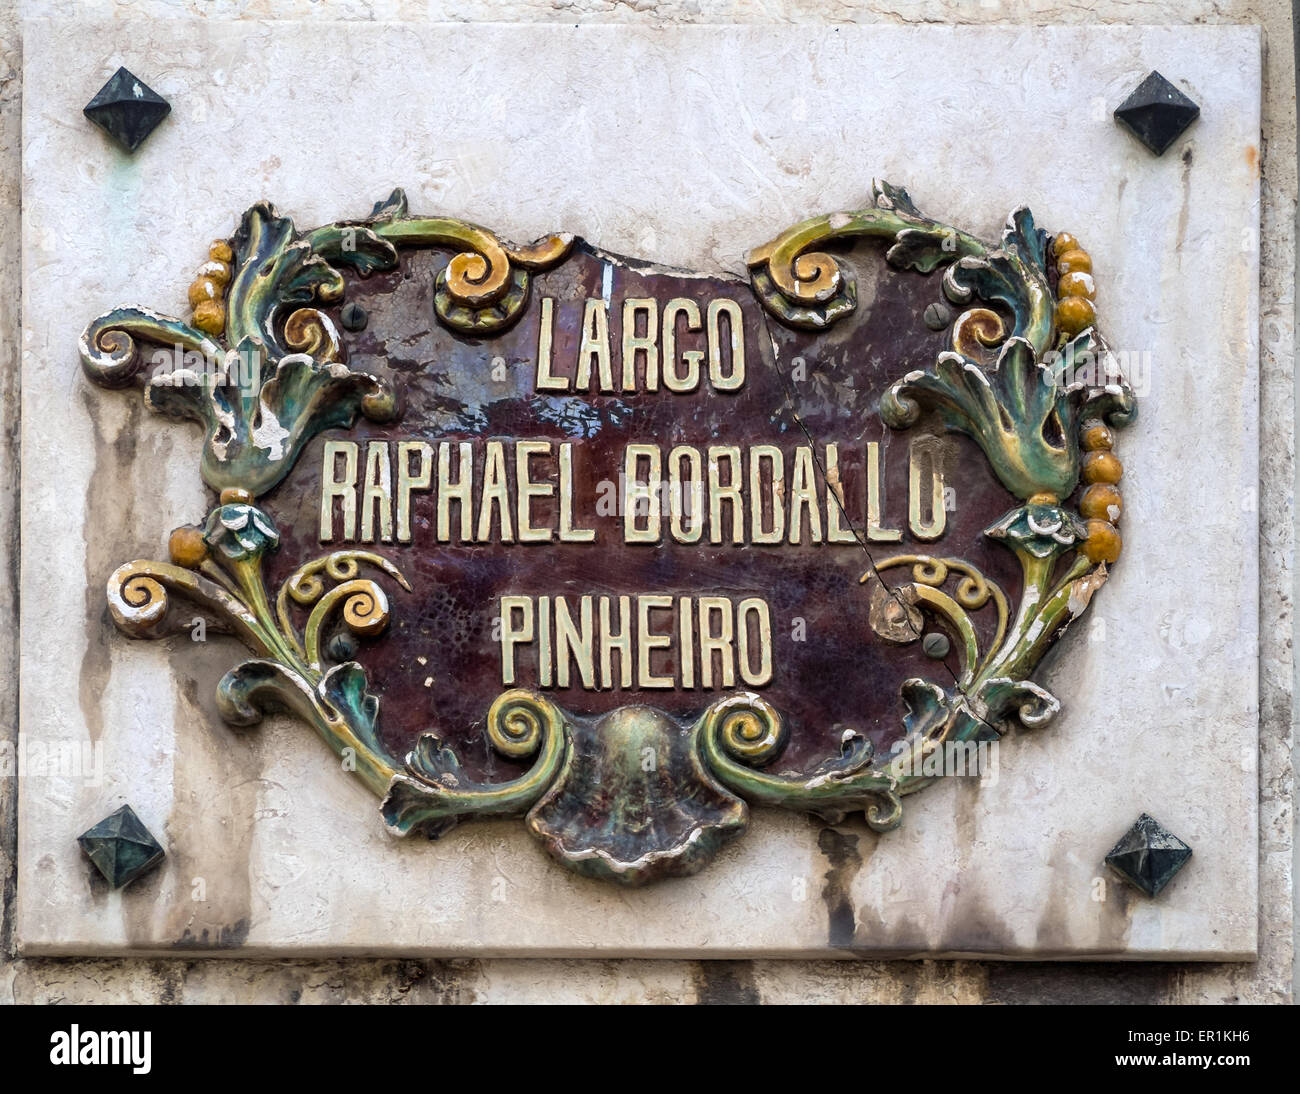 LISBONNE, PORTUGAL - 05 MARS 2015 : panneau de rue très orné pour Largo Raphael Bordallo Pinheiro Banque D'Images